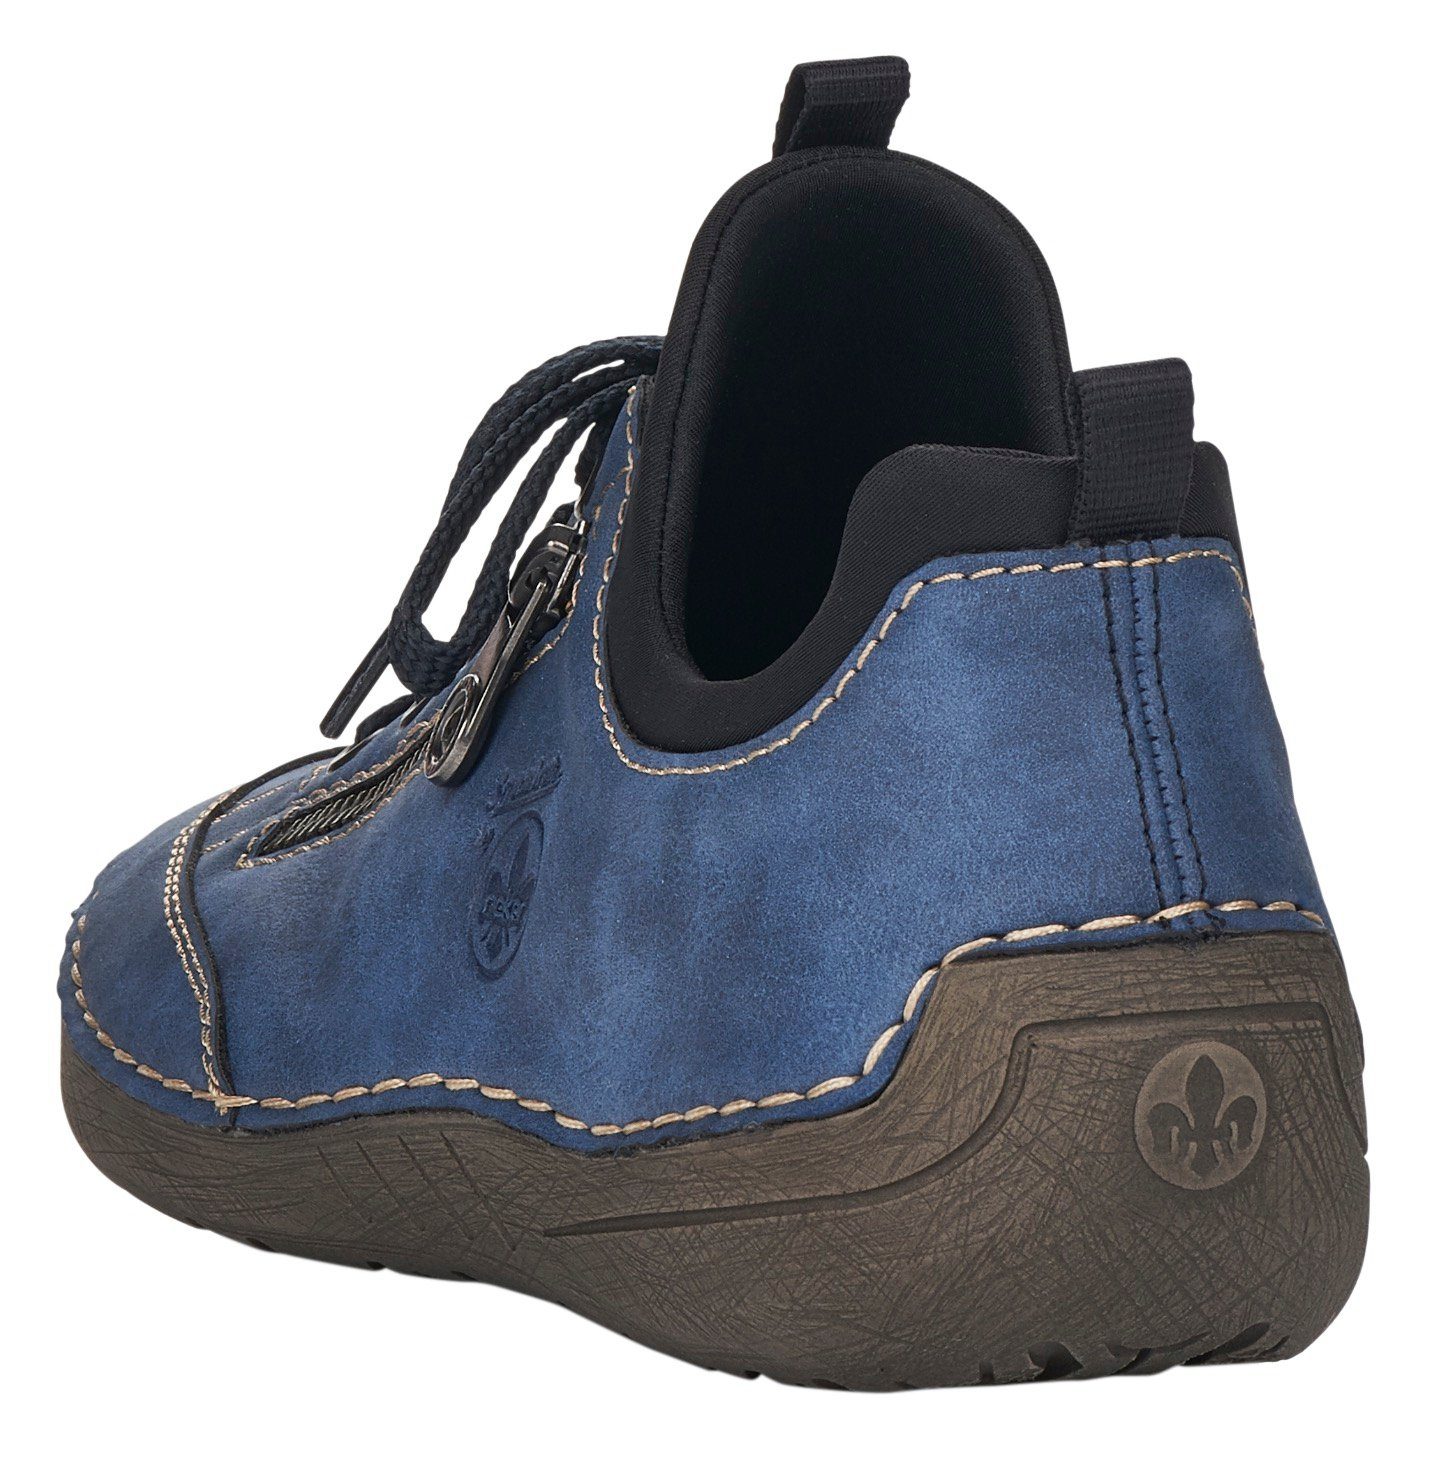 (14) Rieker elastischem blau Einschlupf mit Sneaker Slip-On kombi